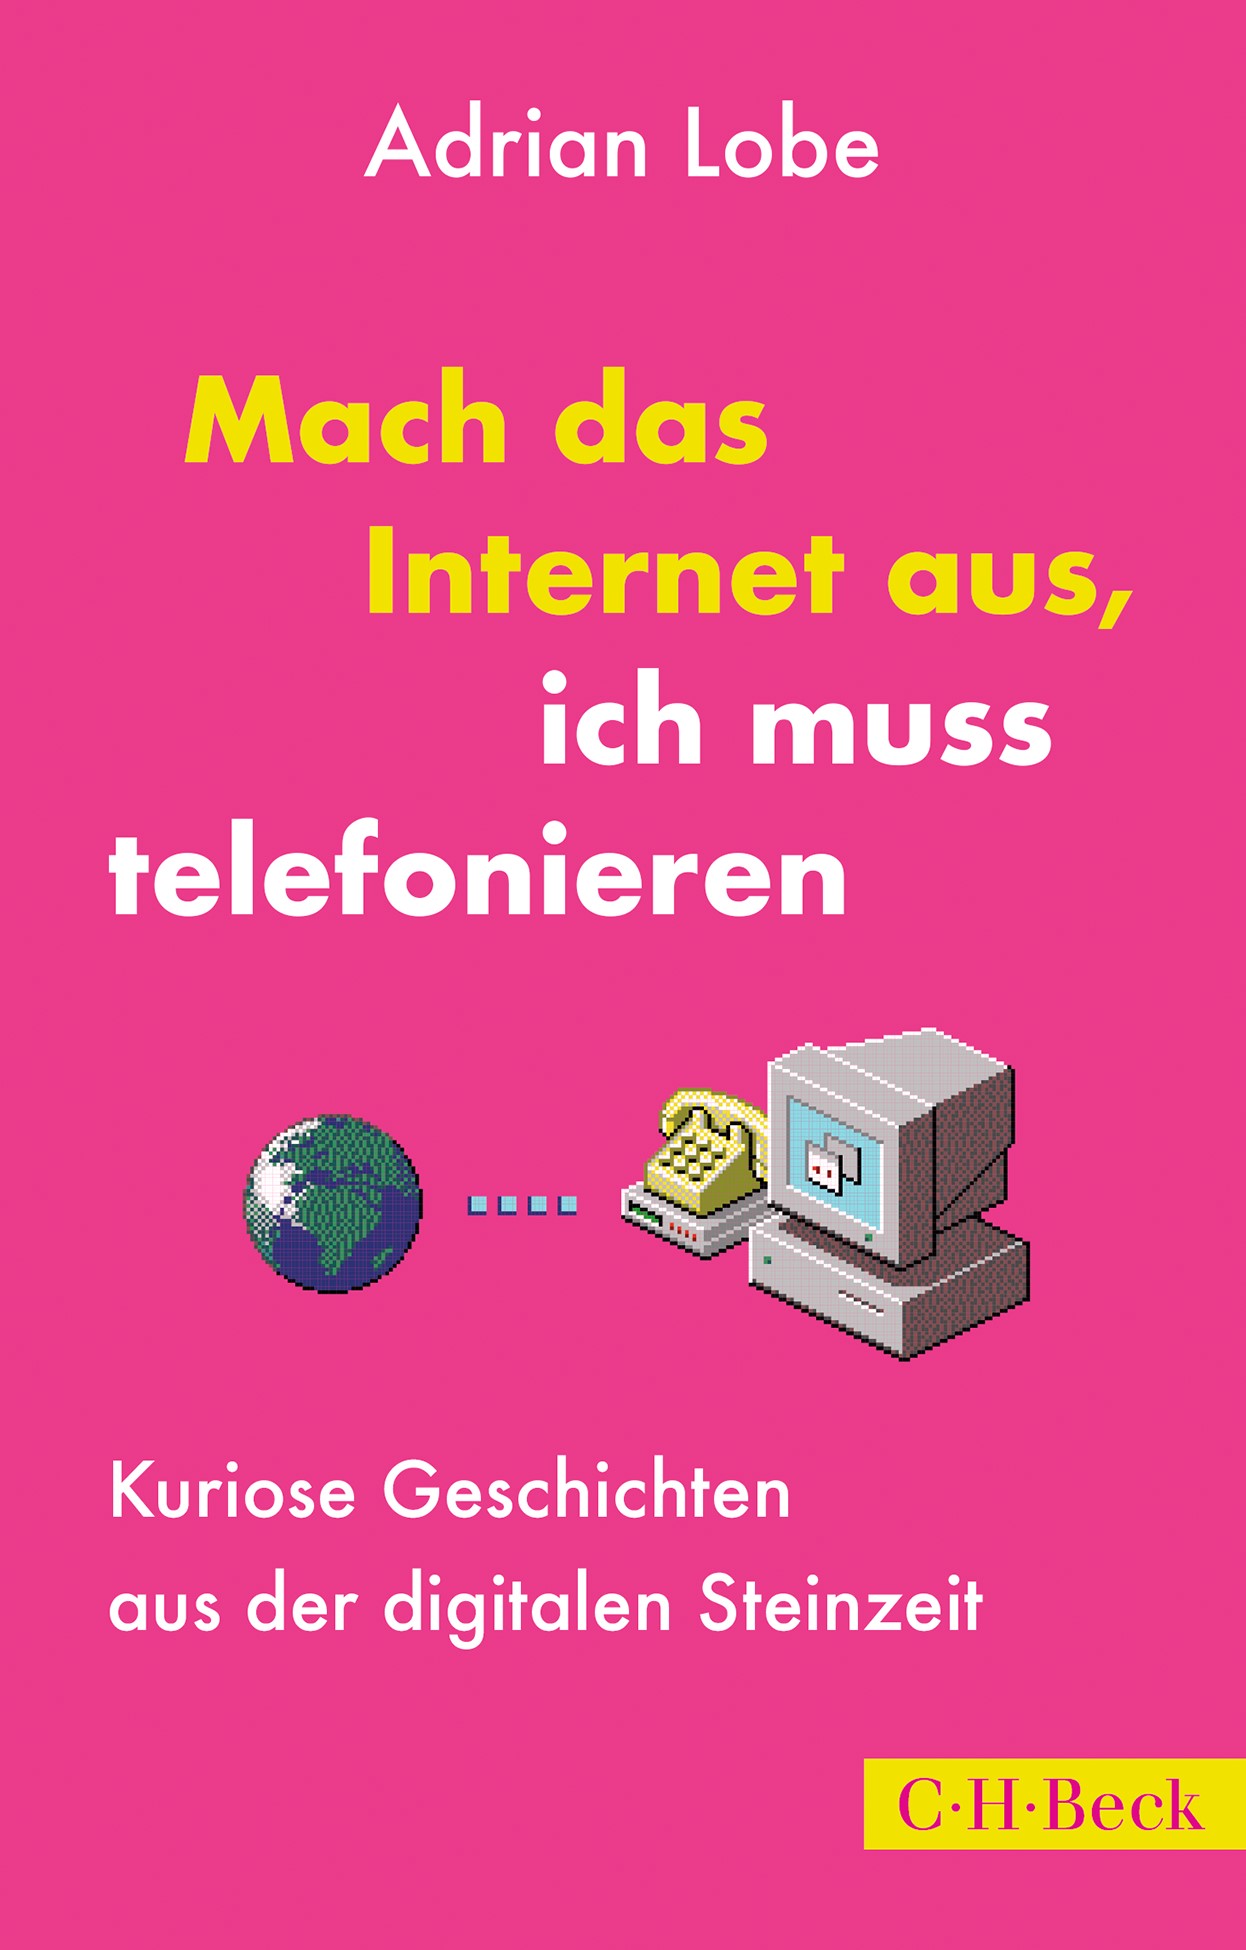 Adrian Lobe: Mach das Internet aus, ich muss telefonieren (EBook, Deutsch language, 2022, C.H. Beck)